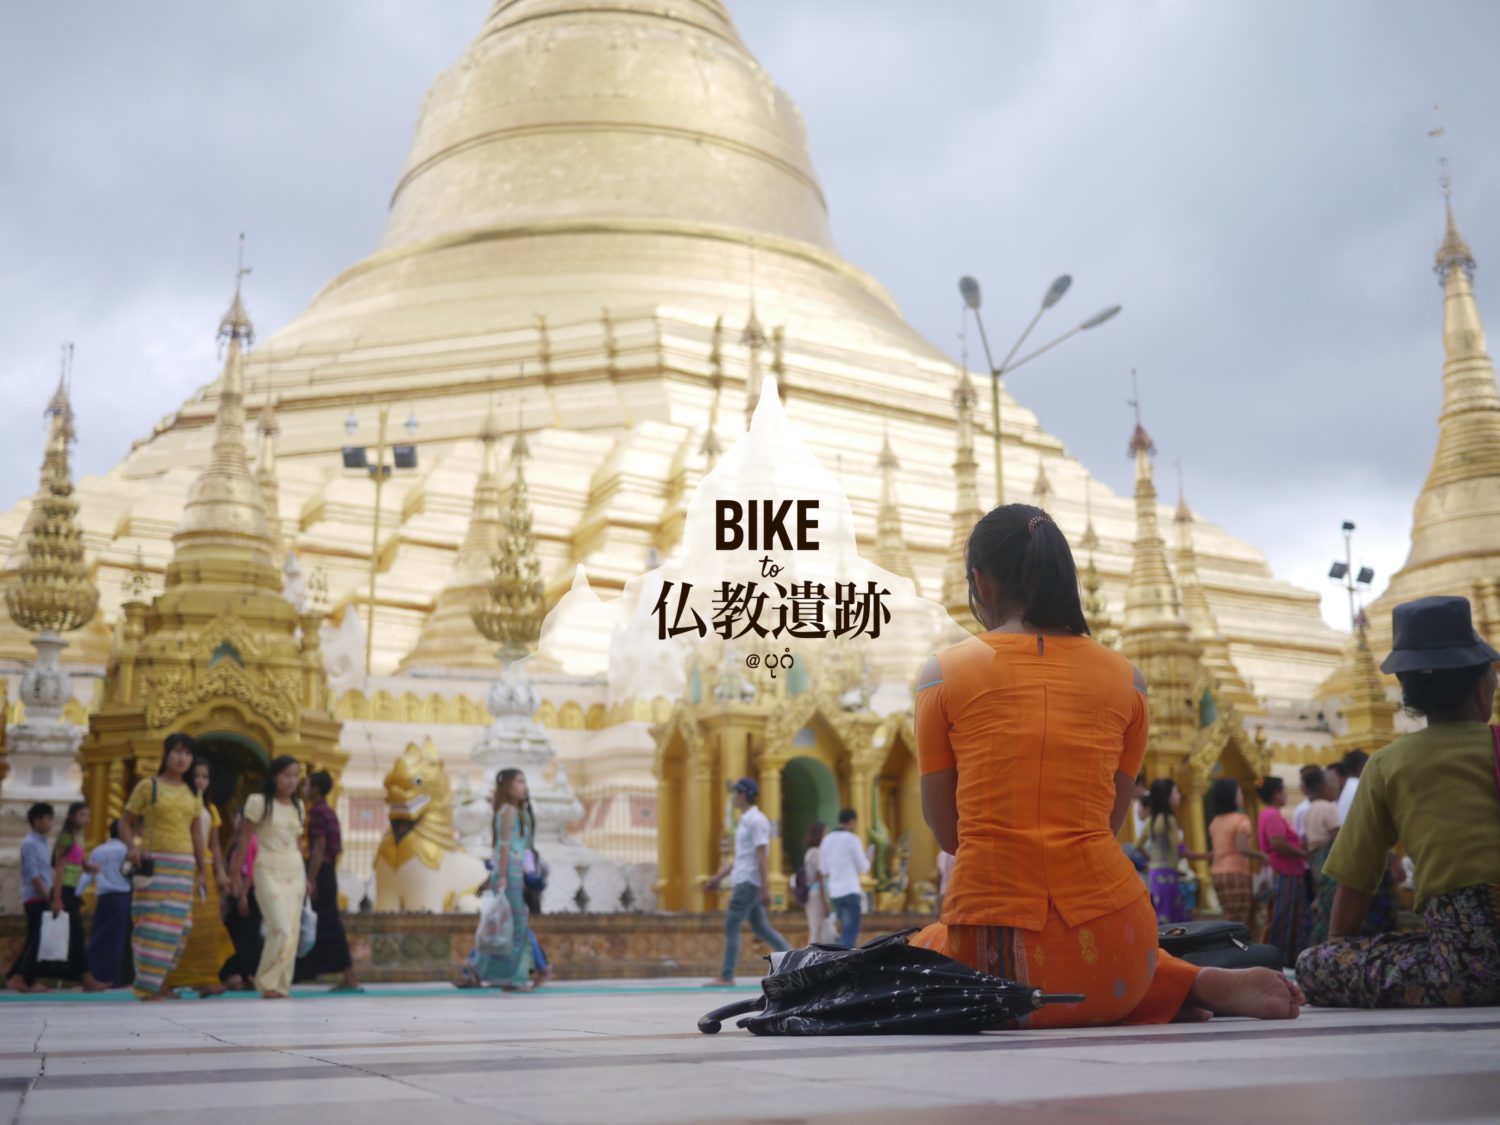 Bike to 仏教遺跡